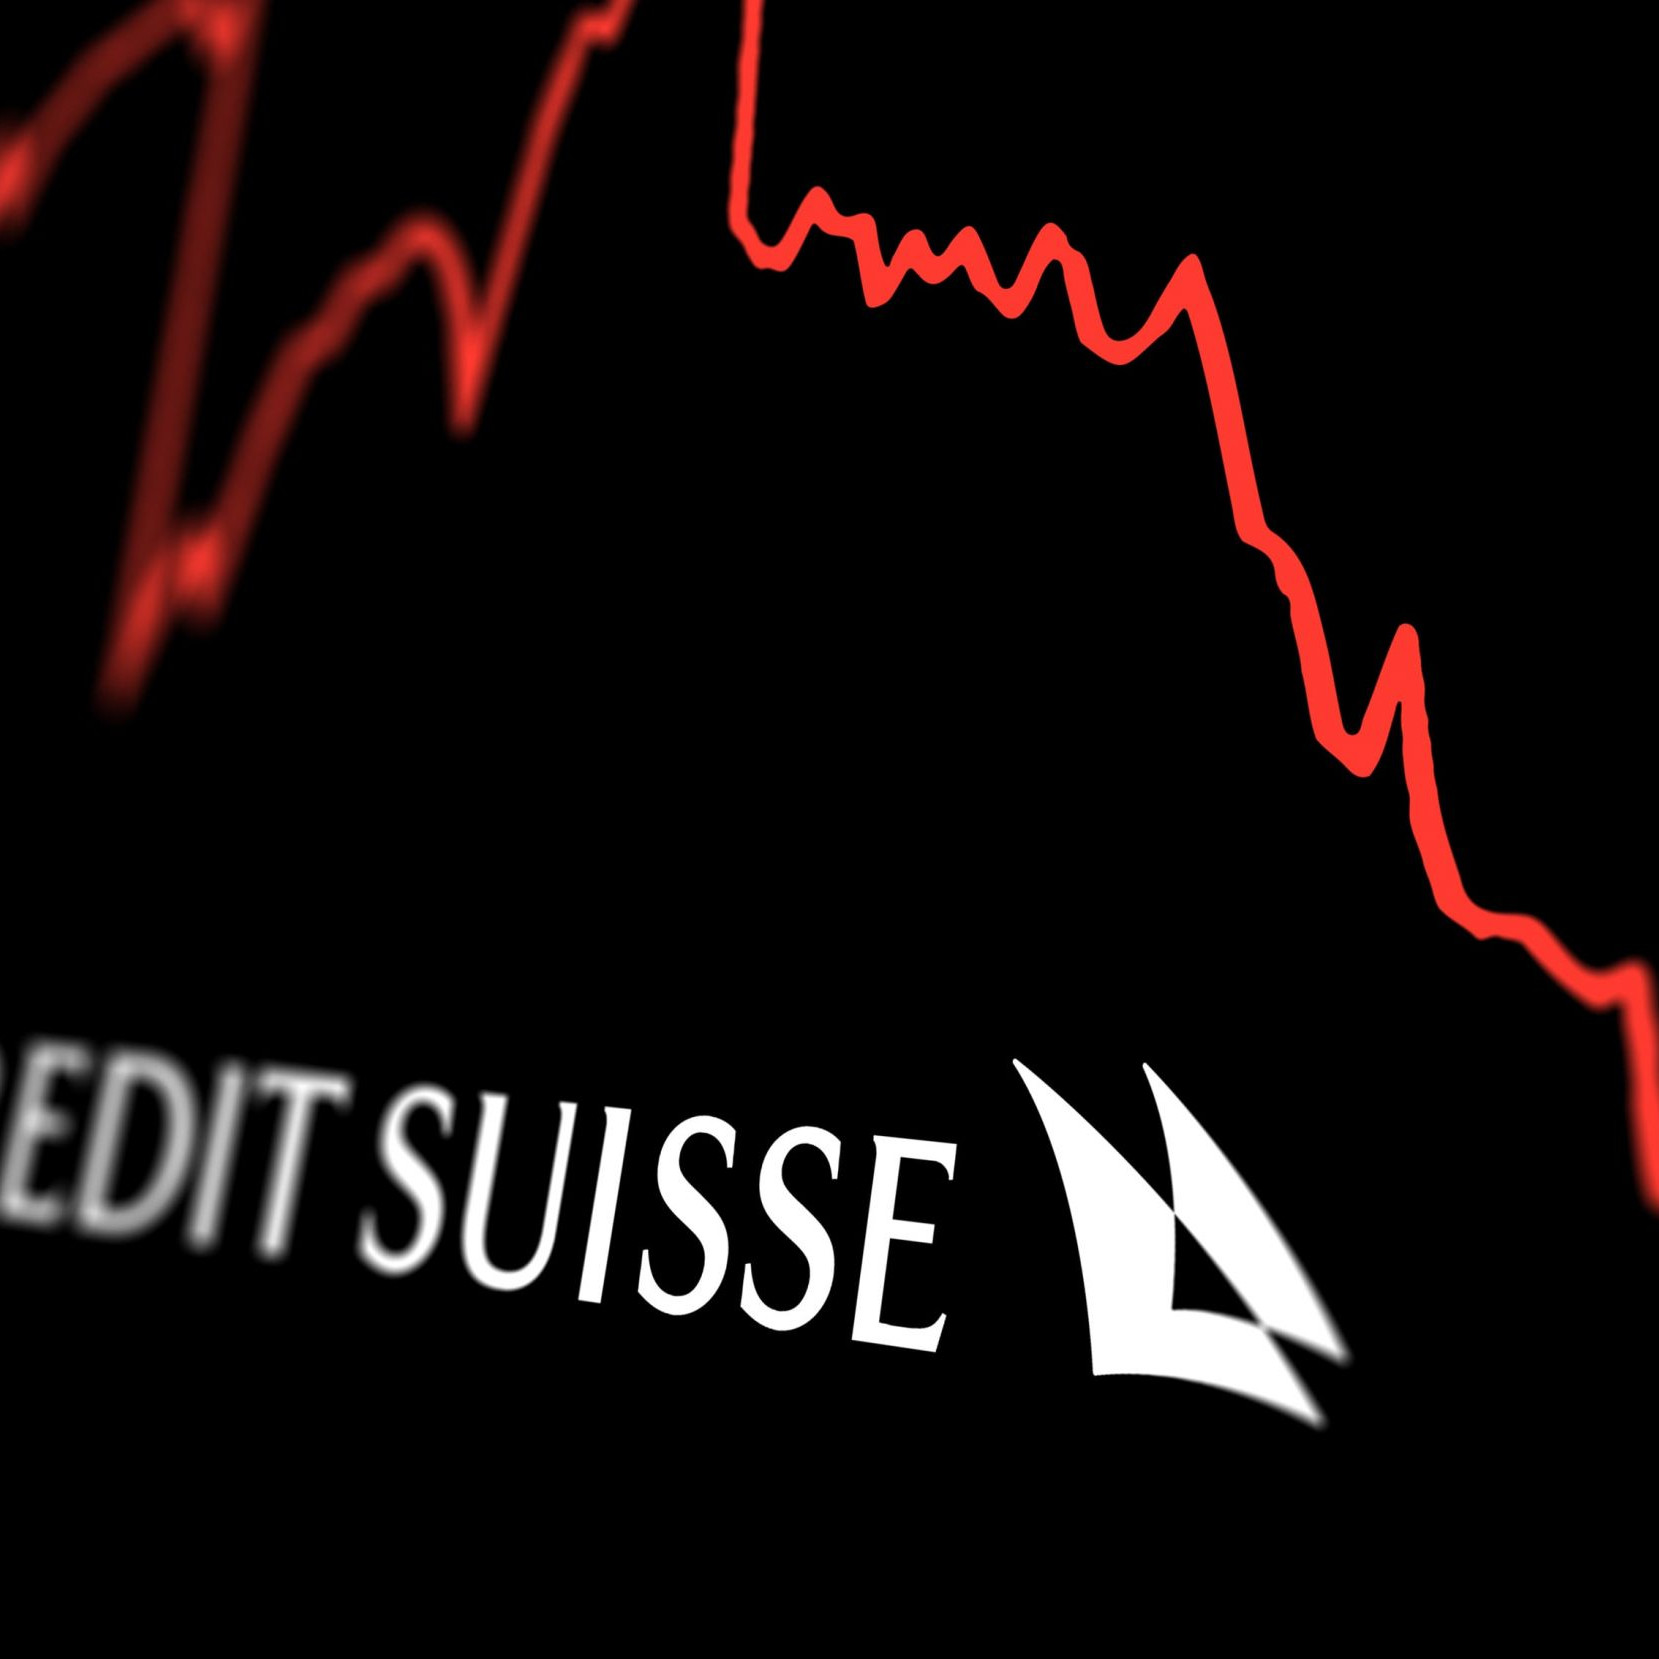 logo du crédit suisse avec une courbe rouge descendante